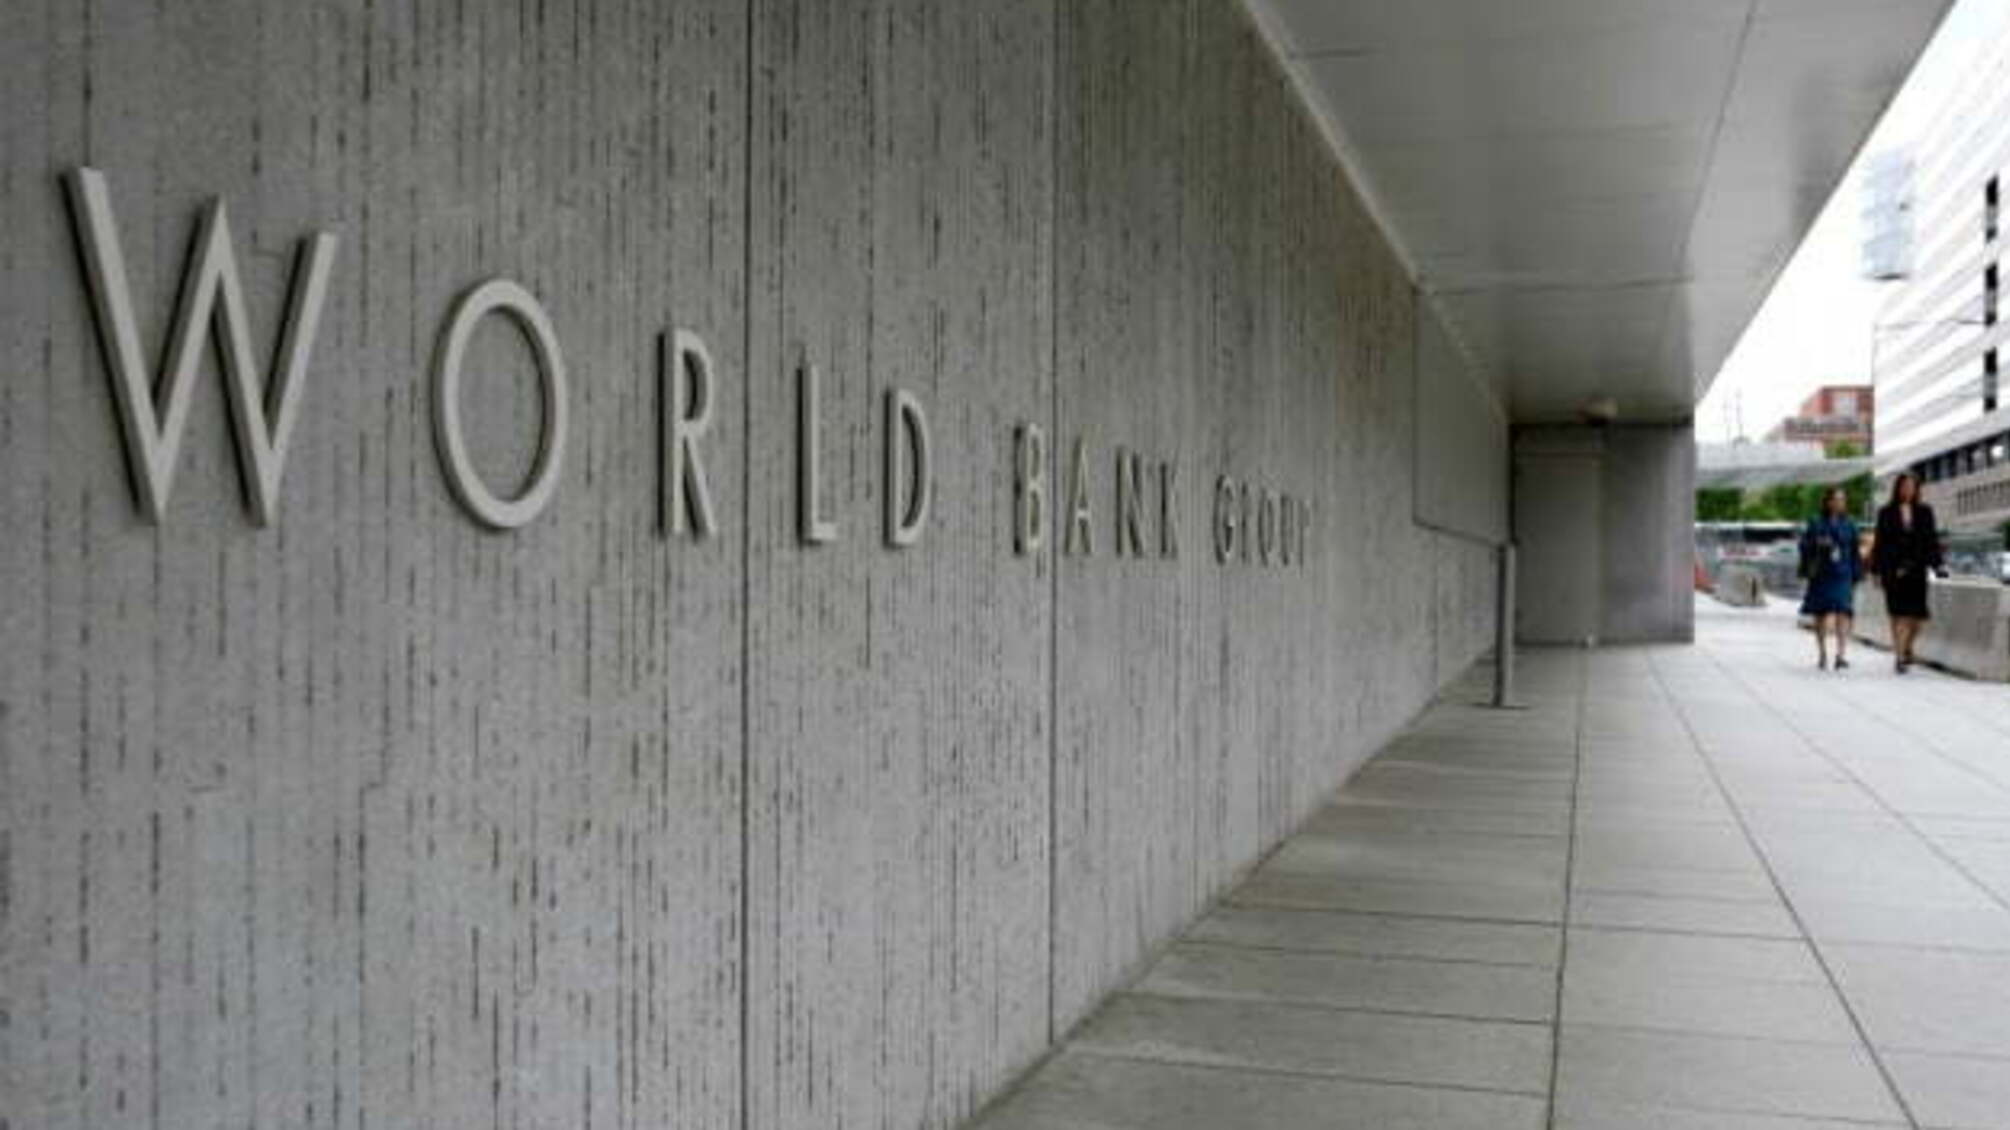 Світовий банк розгляне питання щодо нової позики для України наступного тижня